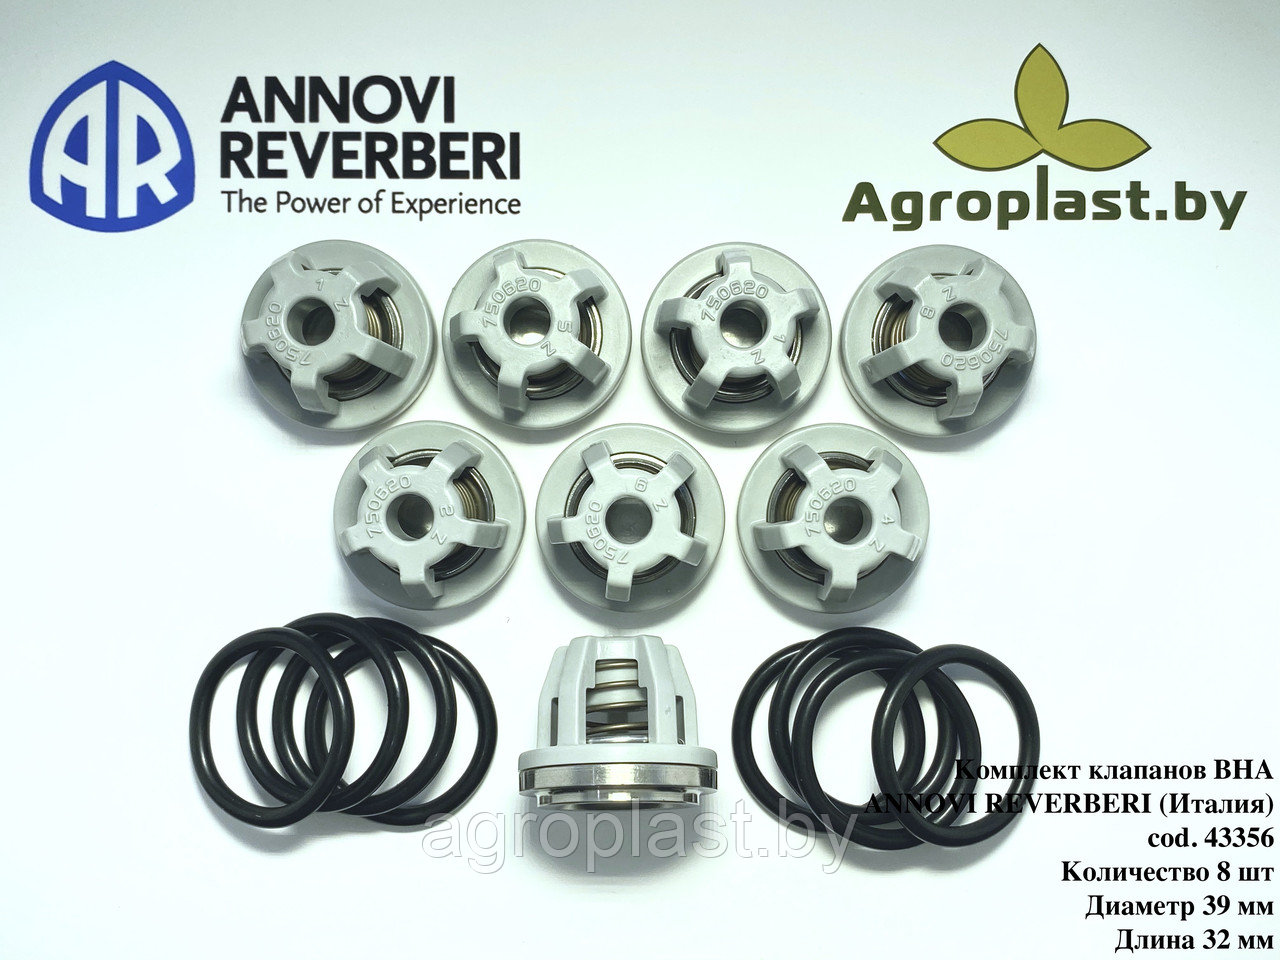 Комплект клапанов для насоса Annovi Reverberi AR 43356